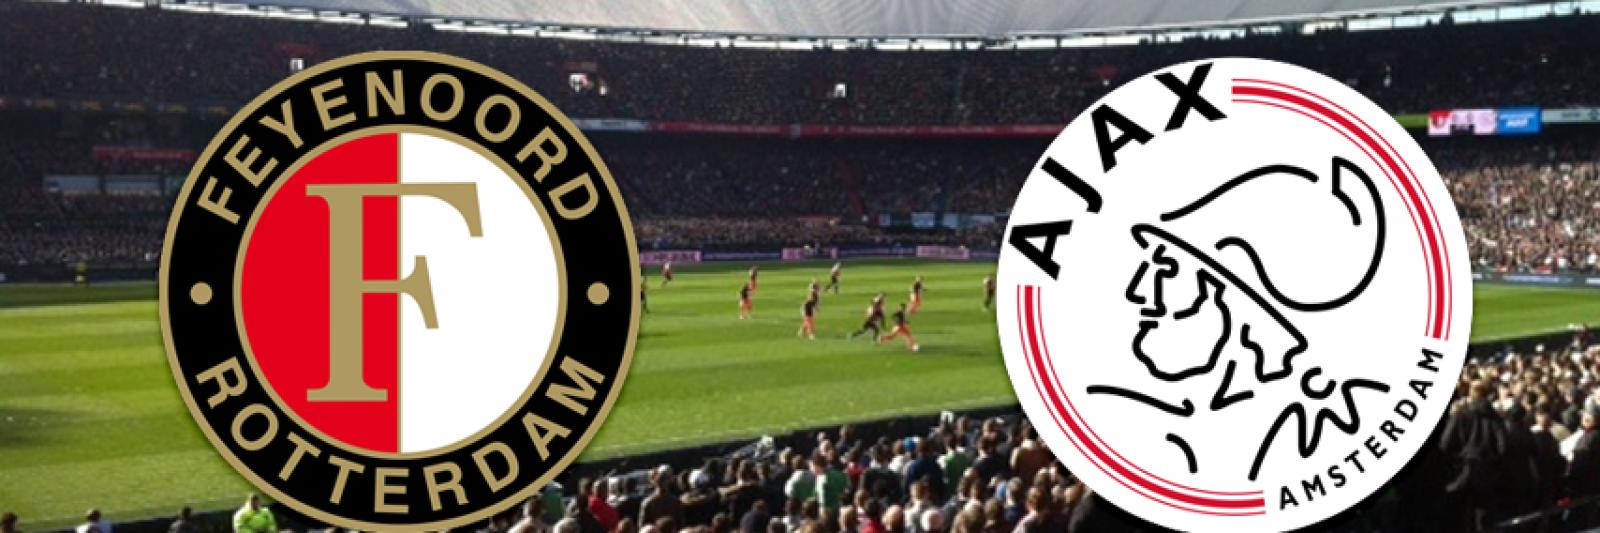 Dubbelzinnigheid beneden Vul in Ajax tegen Feyenoord in de halve finale van KNVB Beker - AT5